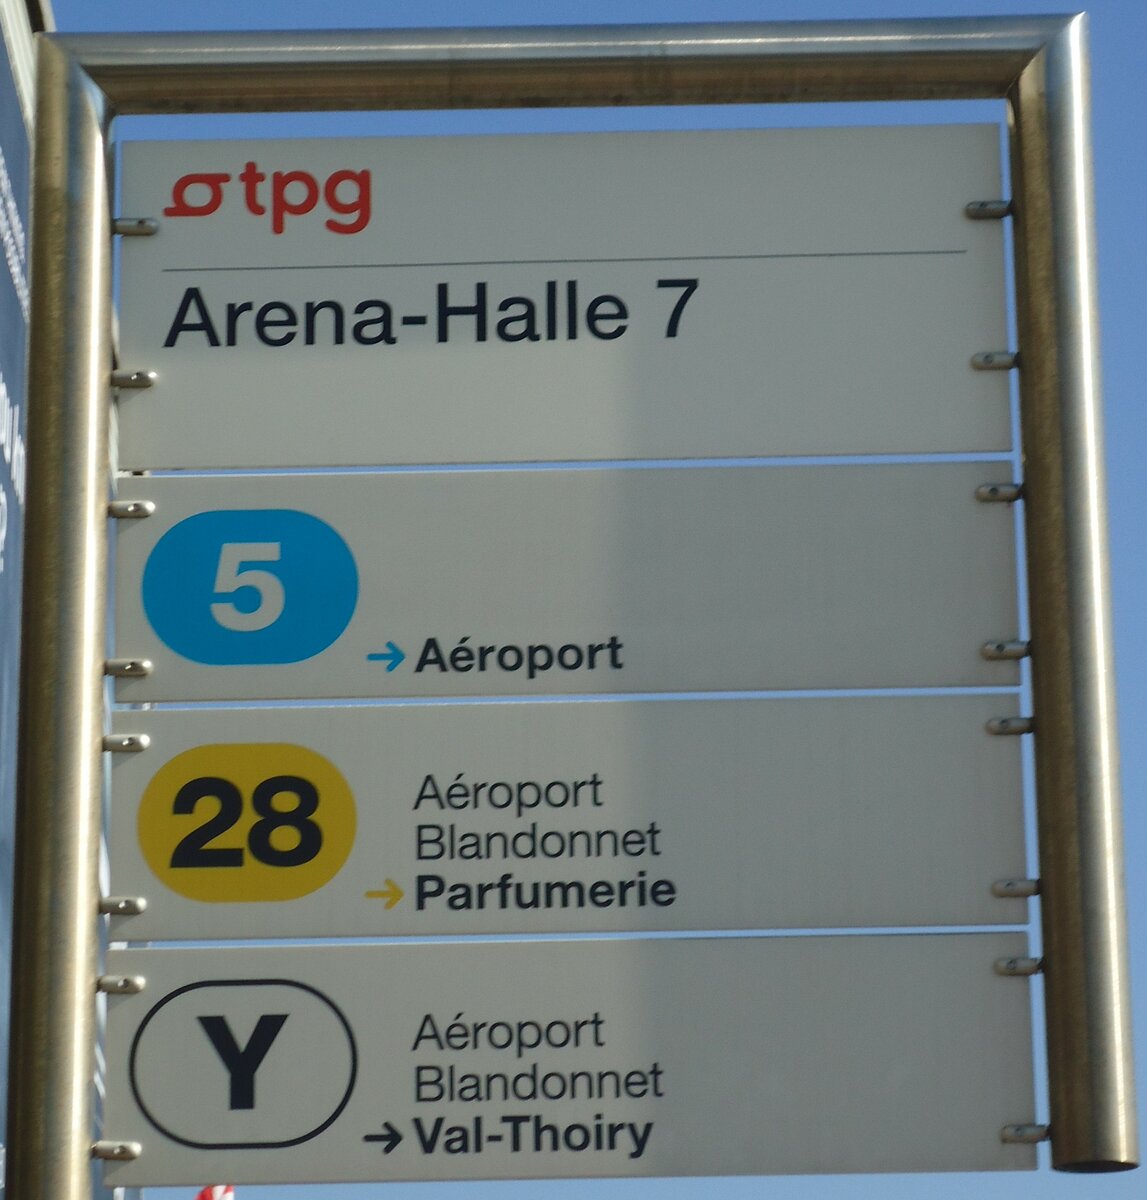 (138'177) - tpg-Haltestellenschild - Genve, Arena-Halle 7 - am 9. Mrz 2012